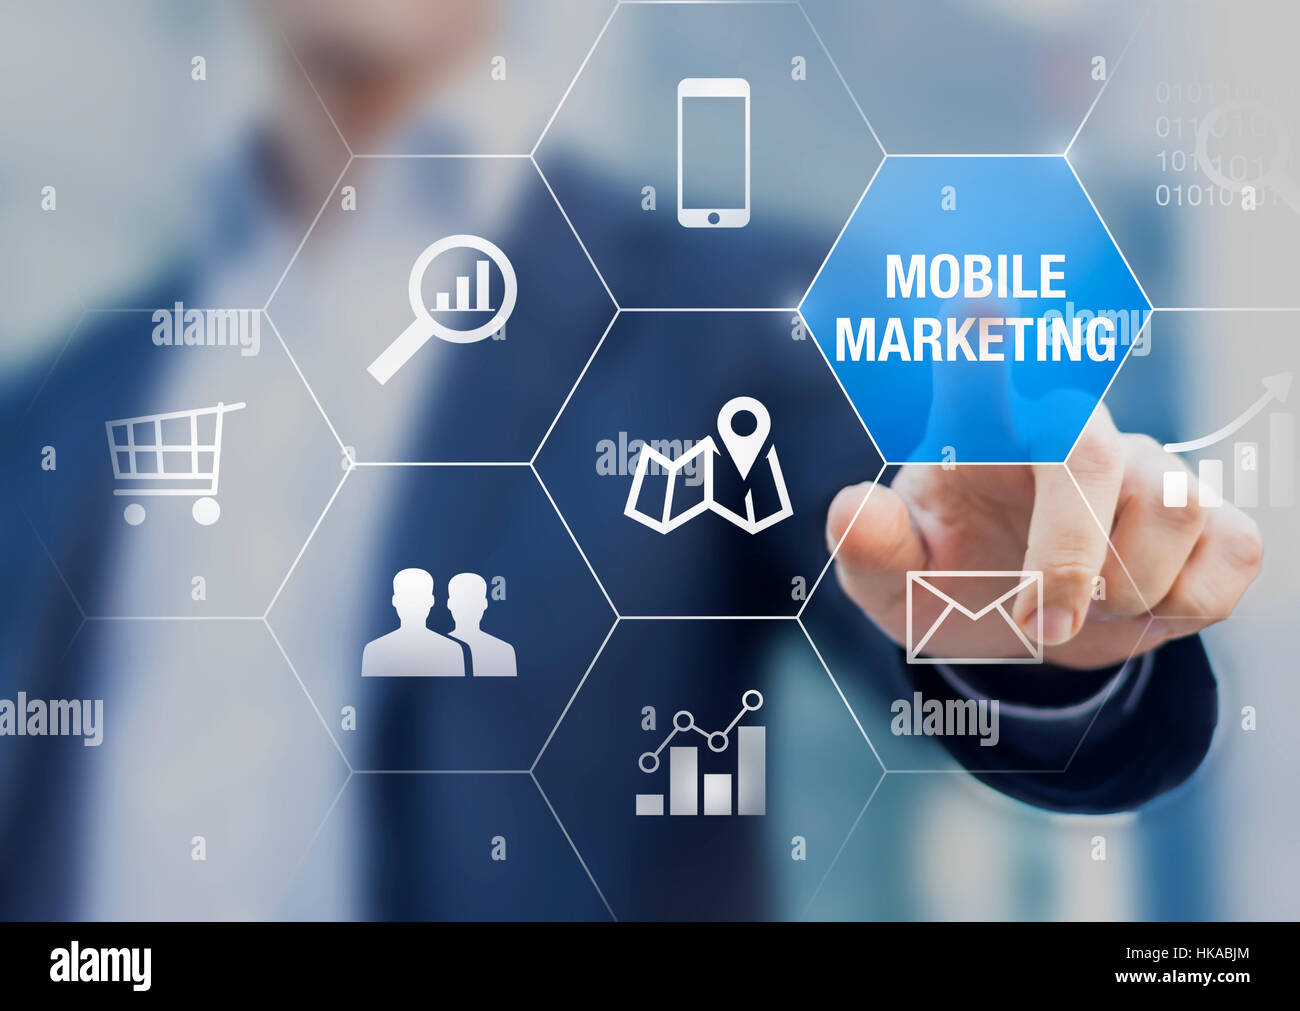 Mobile marketing et e-commerce concept d'analyse de données avec une personne d'affaires touchant un bouton d'une interface numérique moderne Banque D'Images